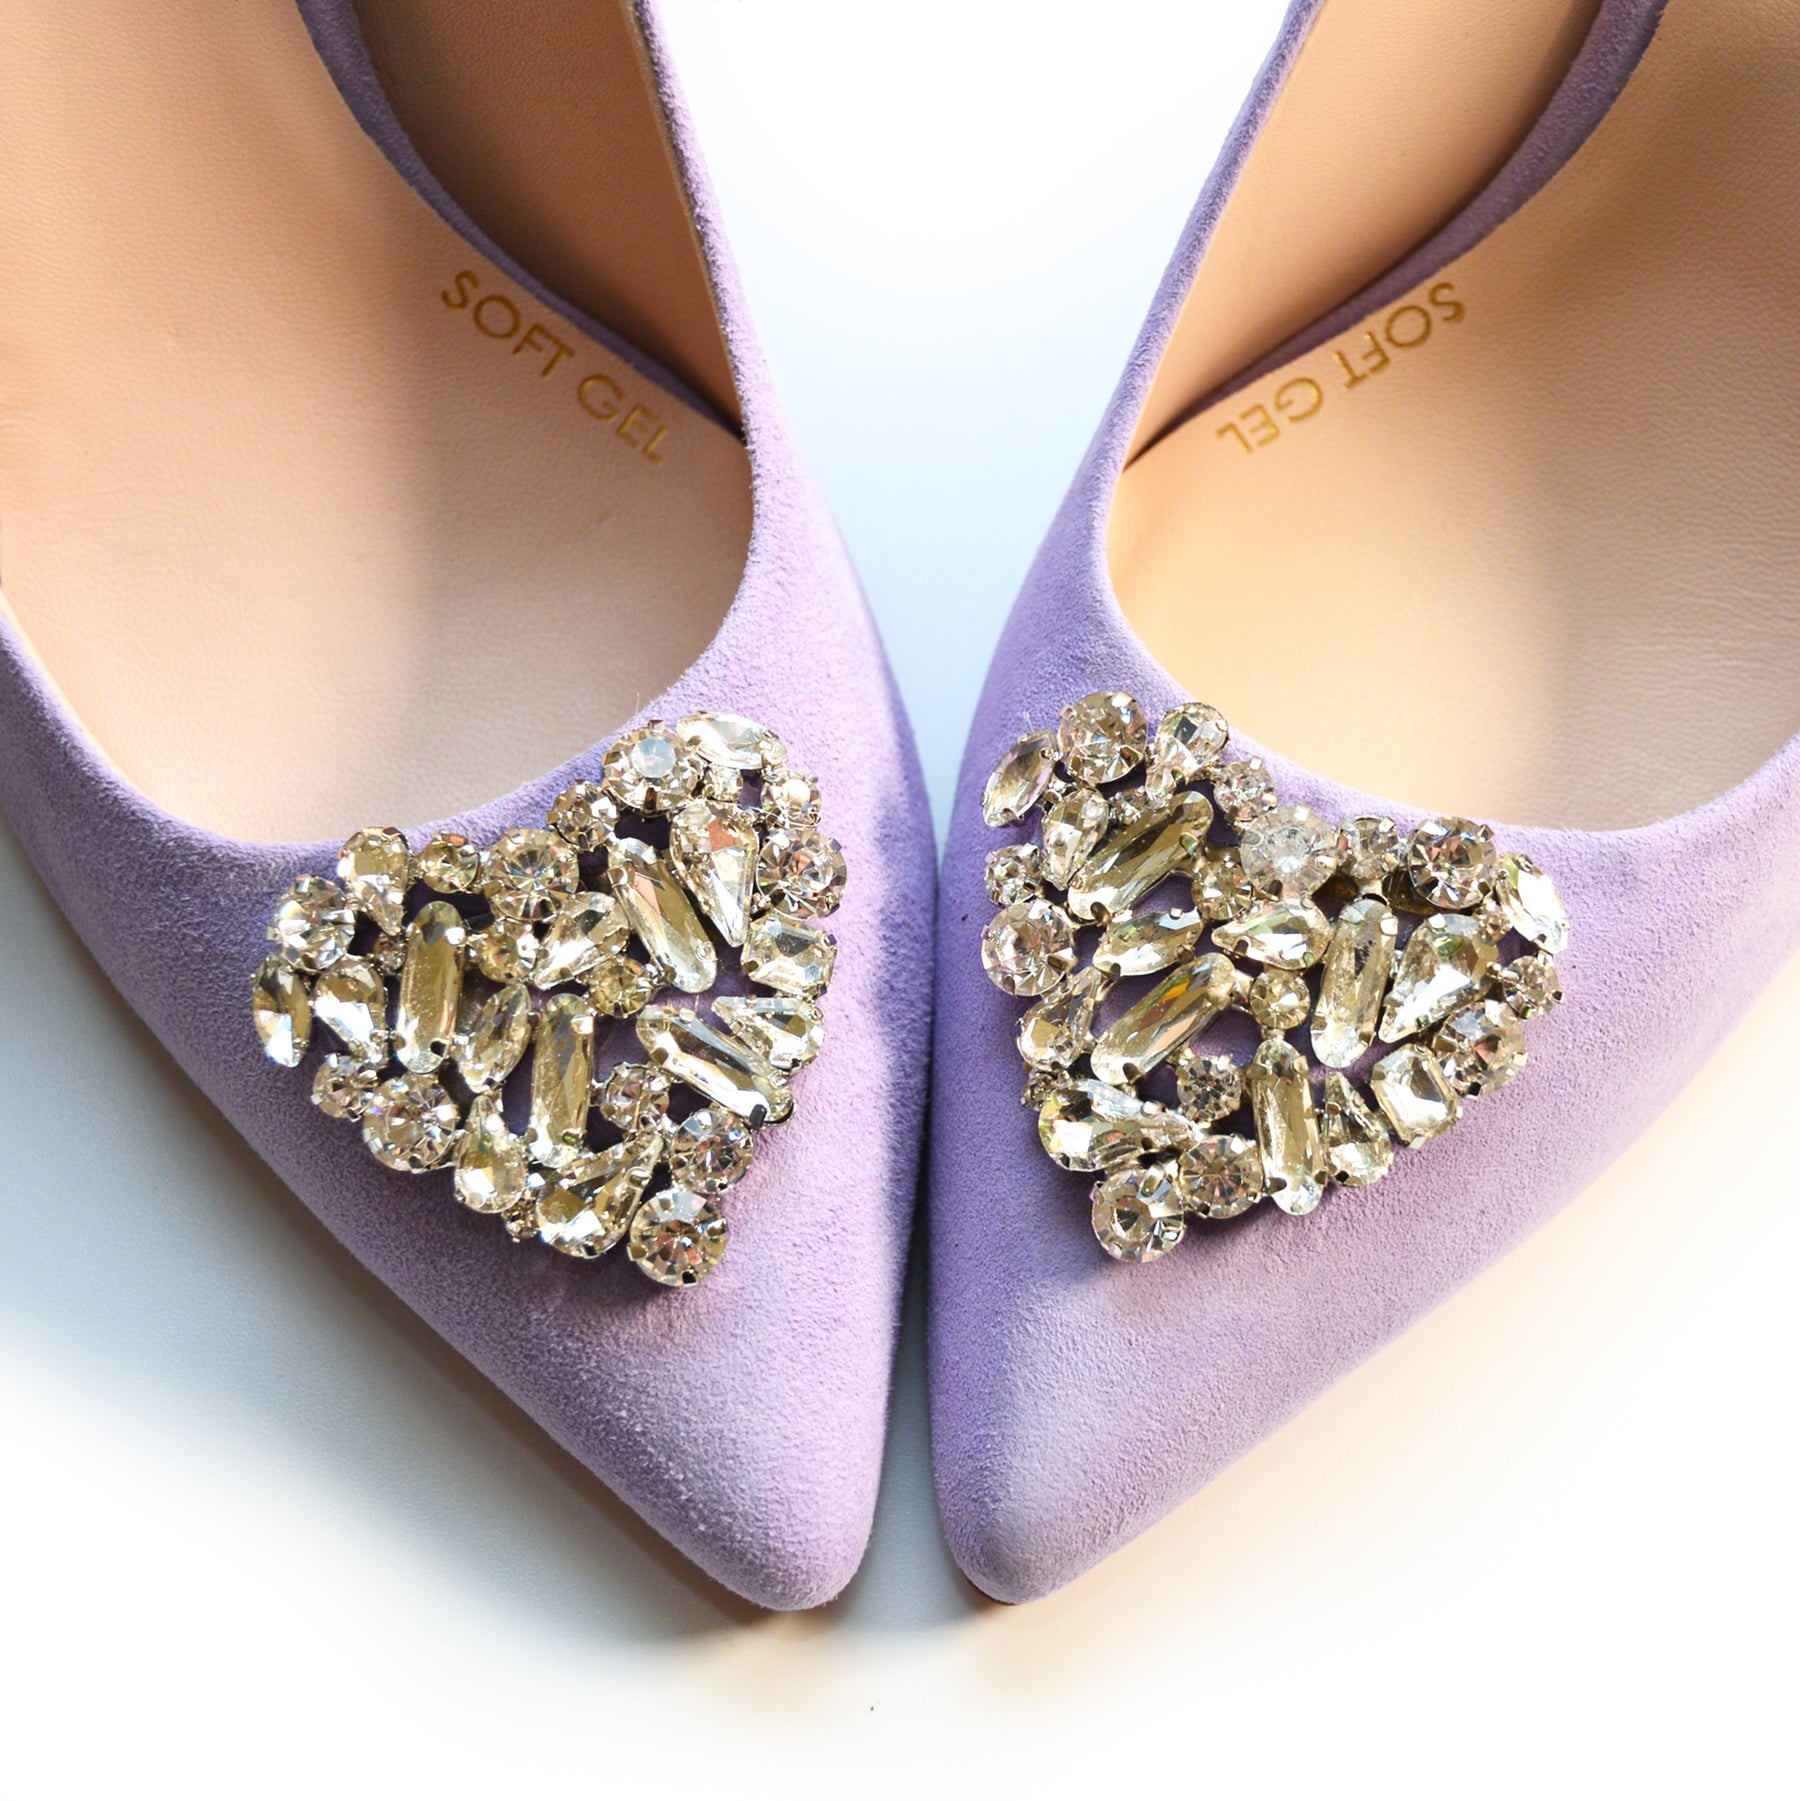 SAMPLE SALE Violetta heels